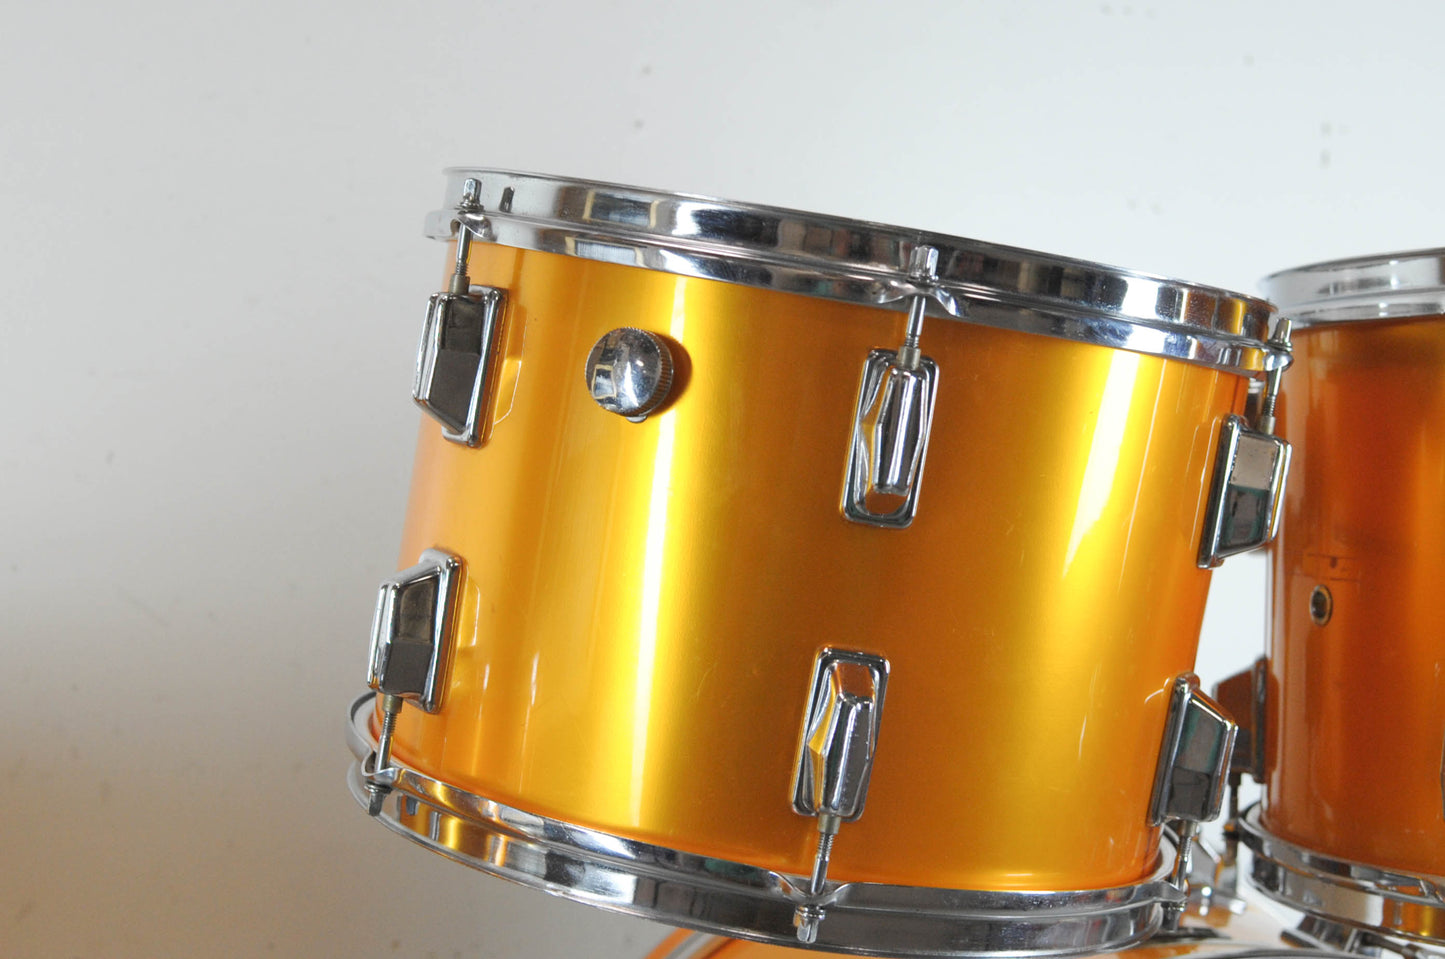 1980s Pearl All-Fiberglass Gold Satin Drum Set